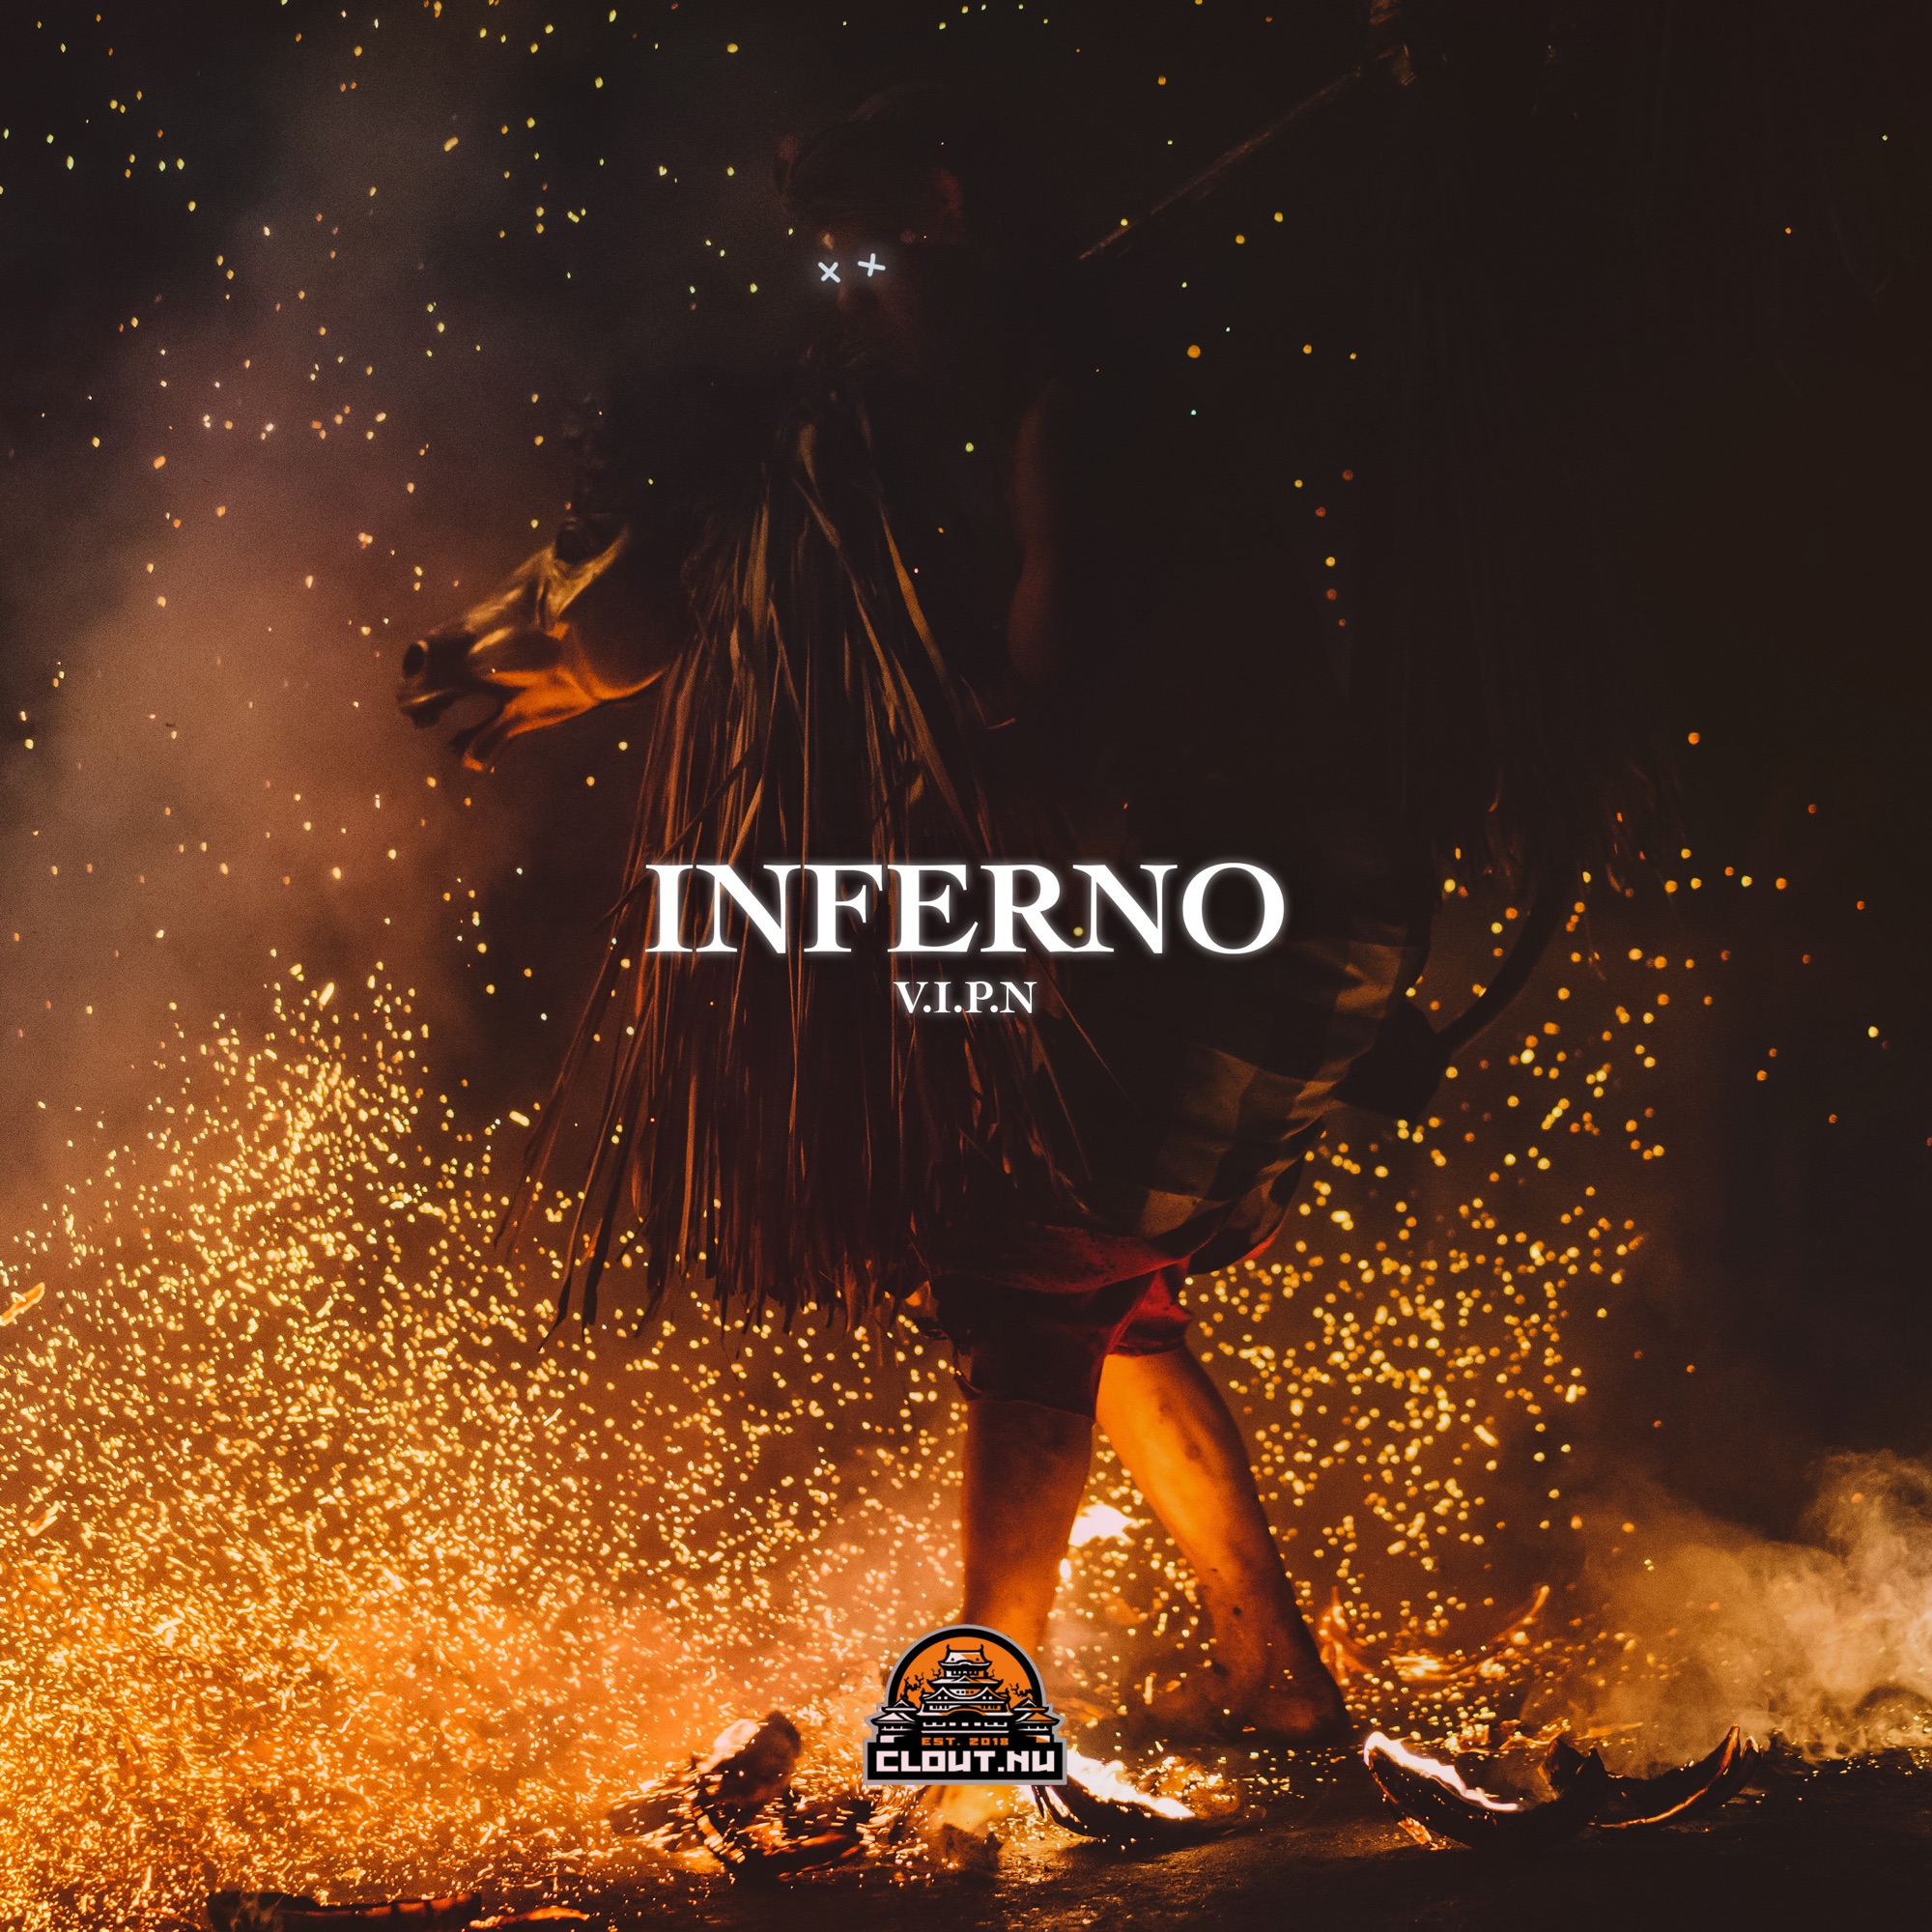 V.I.P.N - Inferno - Single